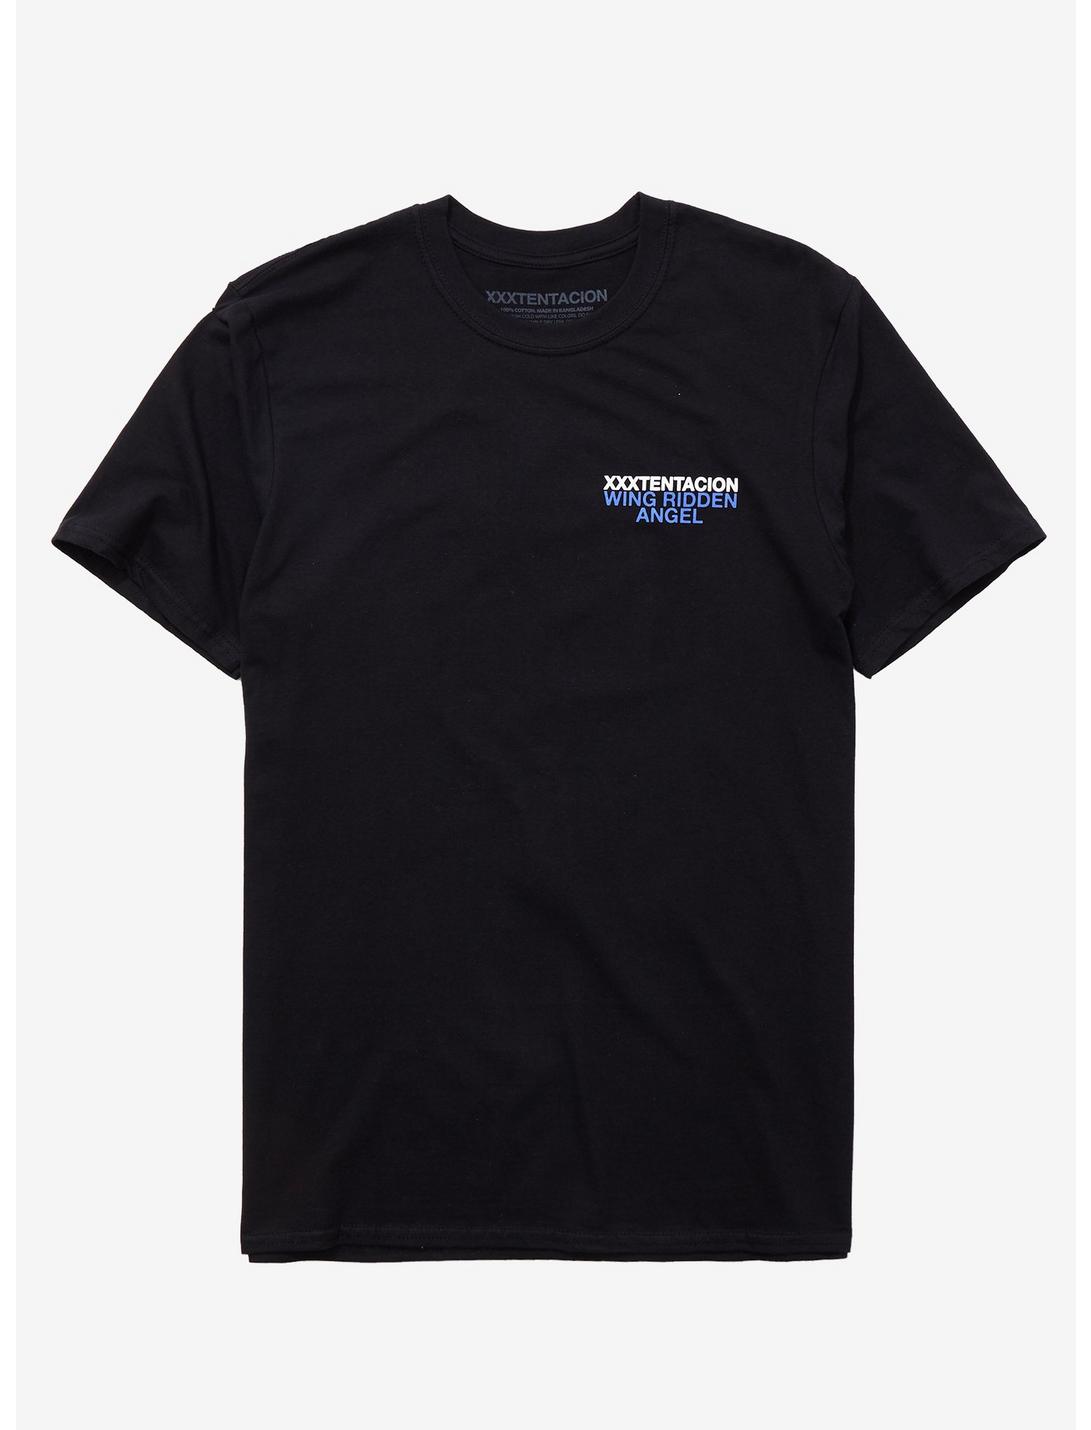 XXXTentacion Wing Ridden Angel T-Shirt, BLACK, hi-res